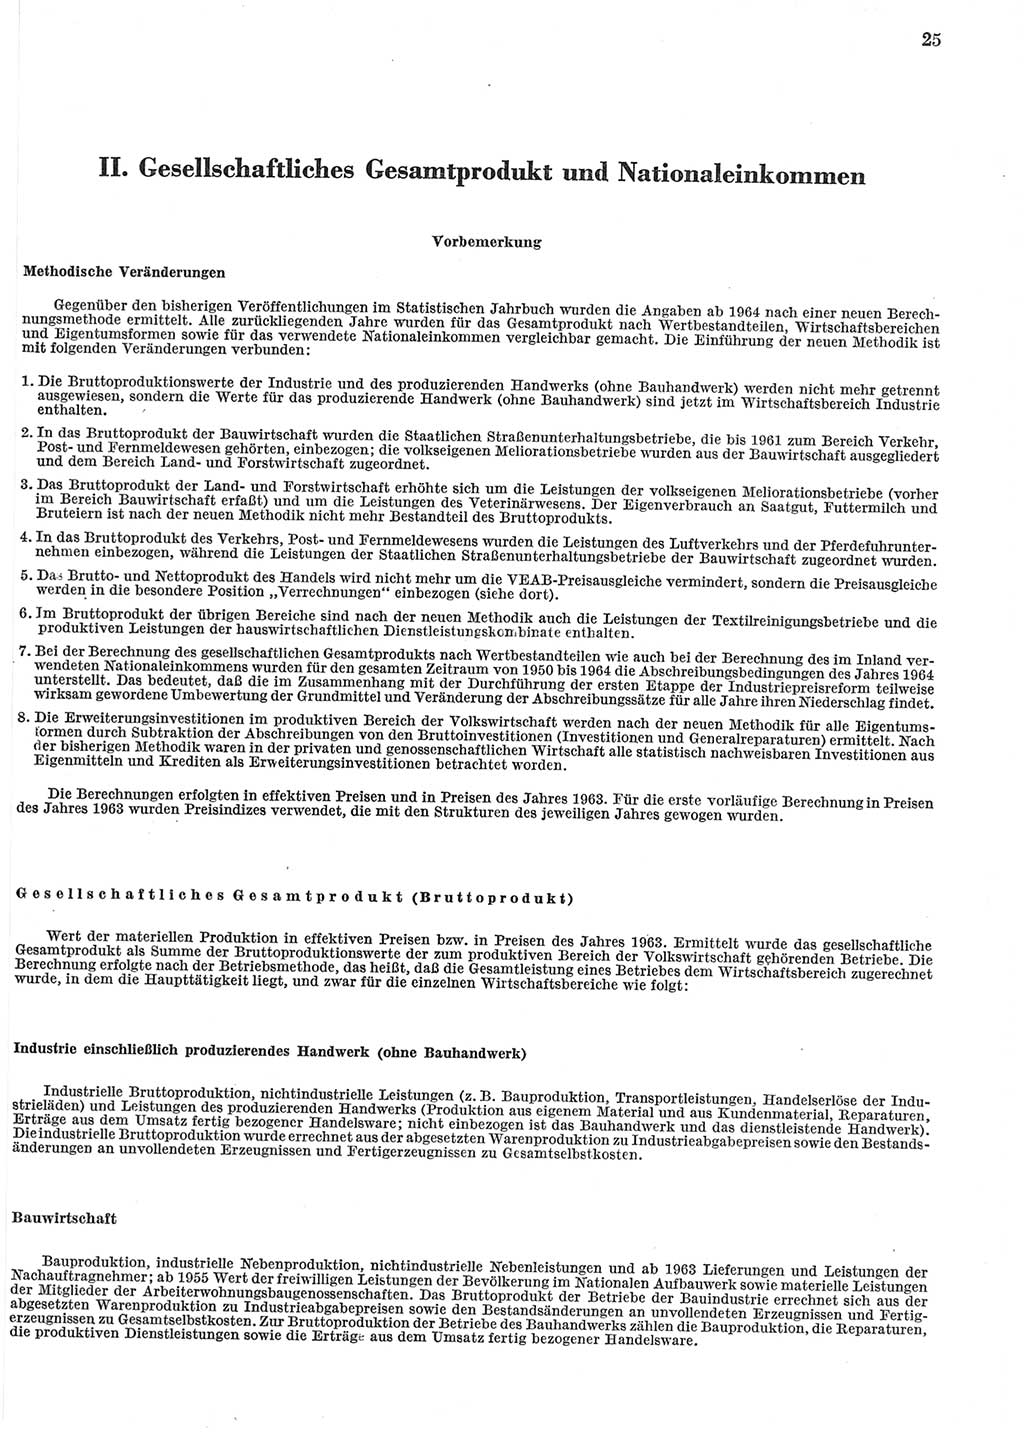 Statistisches Jahrbuch der Deutschen Demokratischen Republik (DDR) 1965, Seite 25 (Stat. Jb. DDR 1965, S. 25)